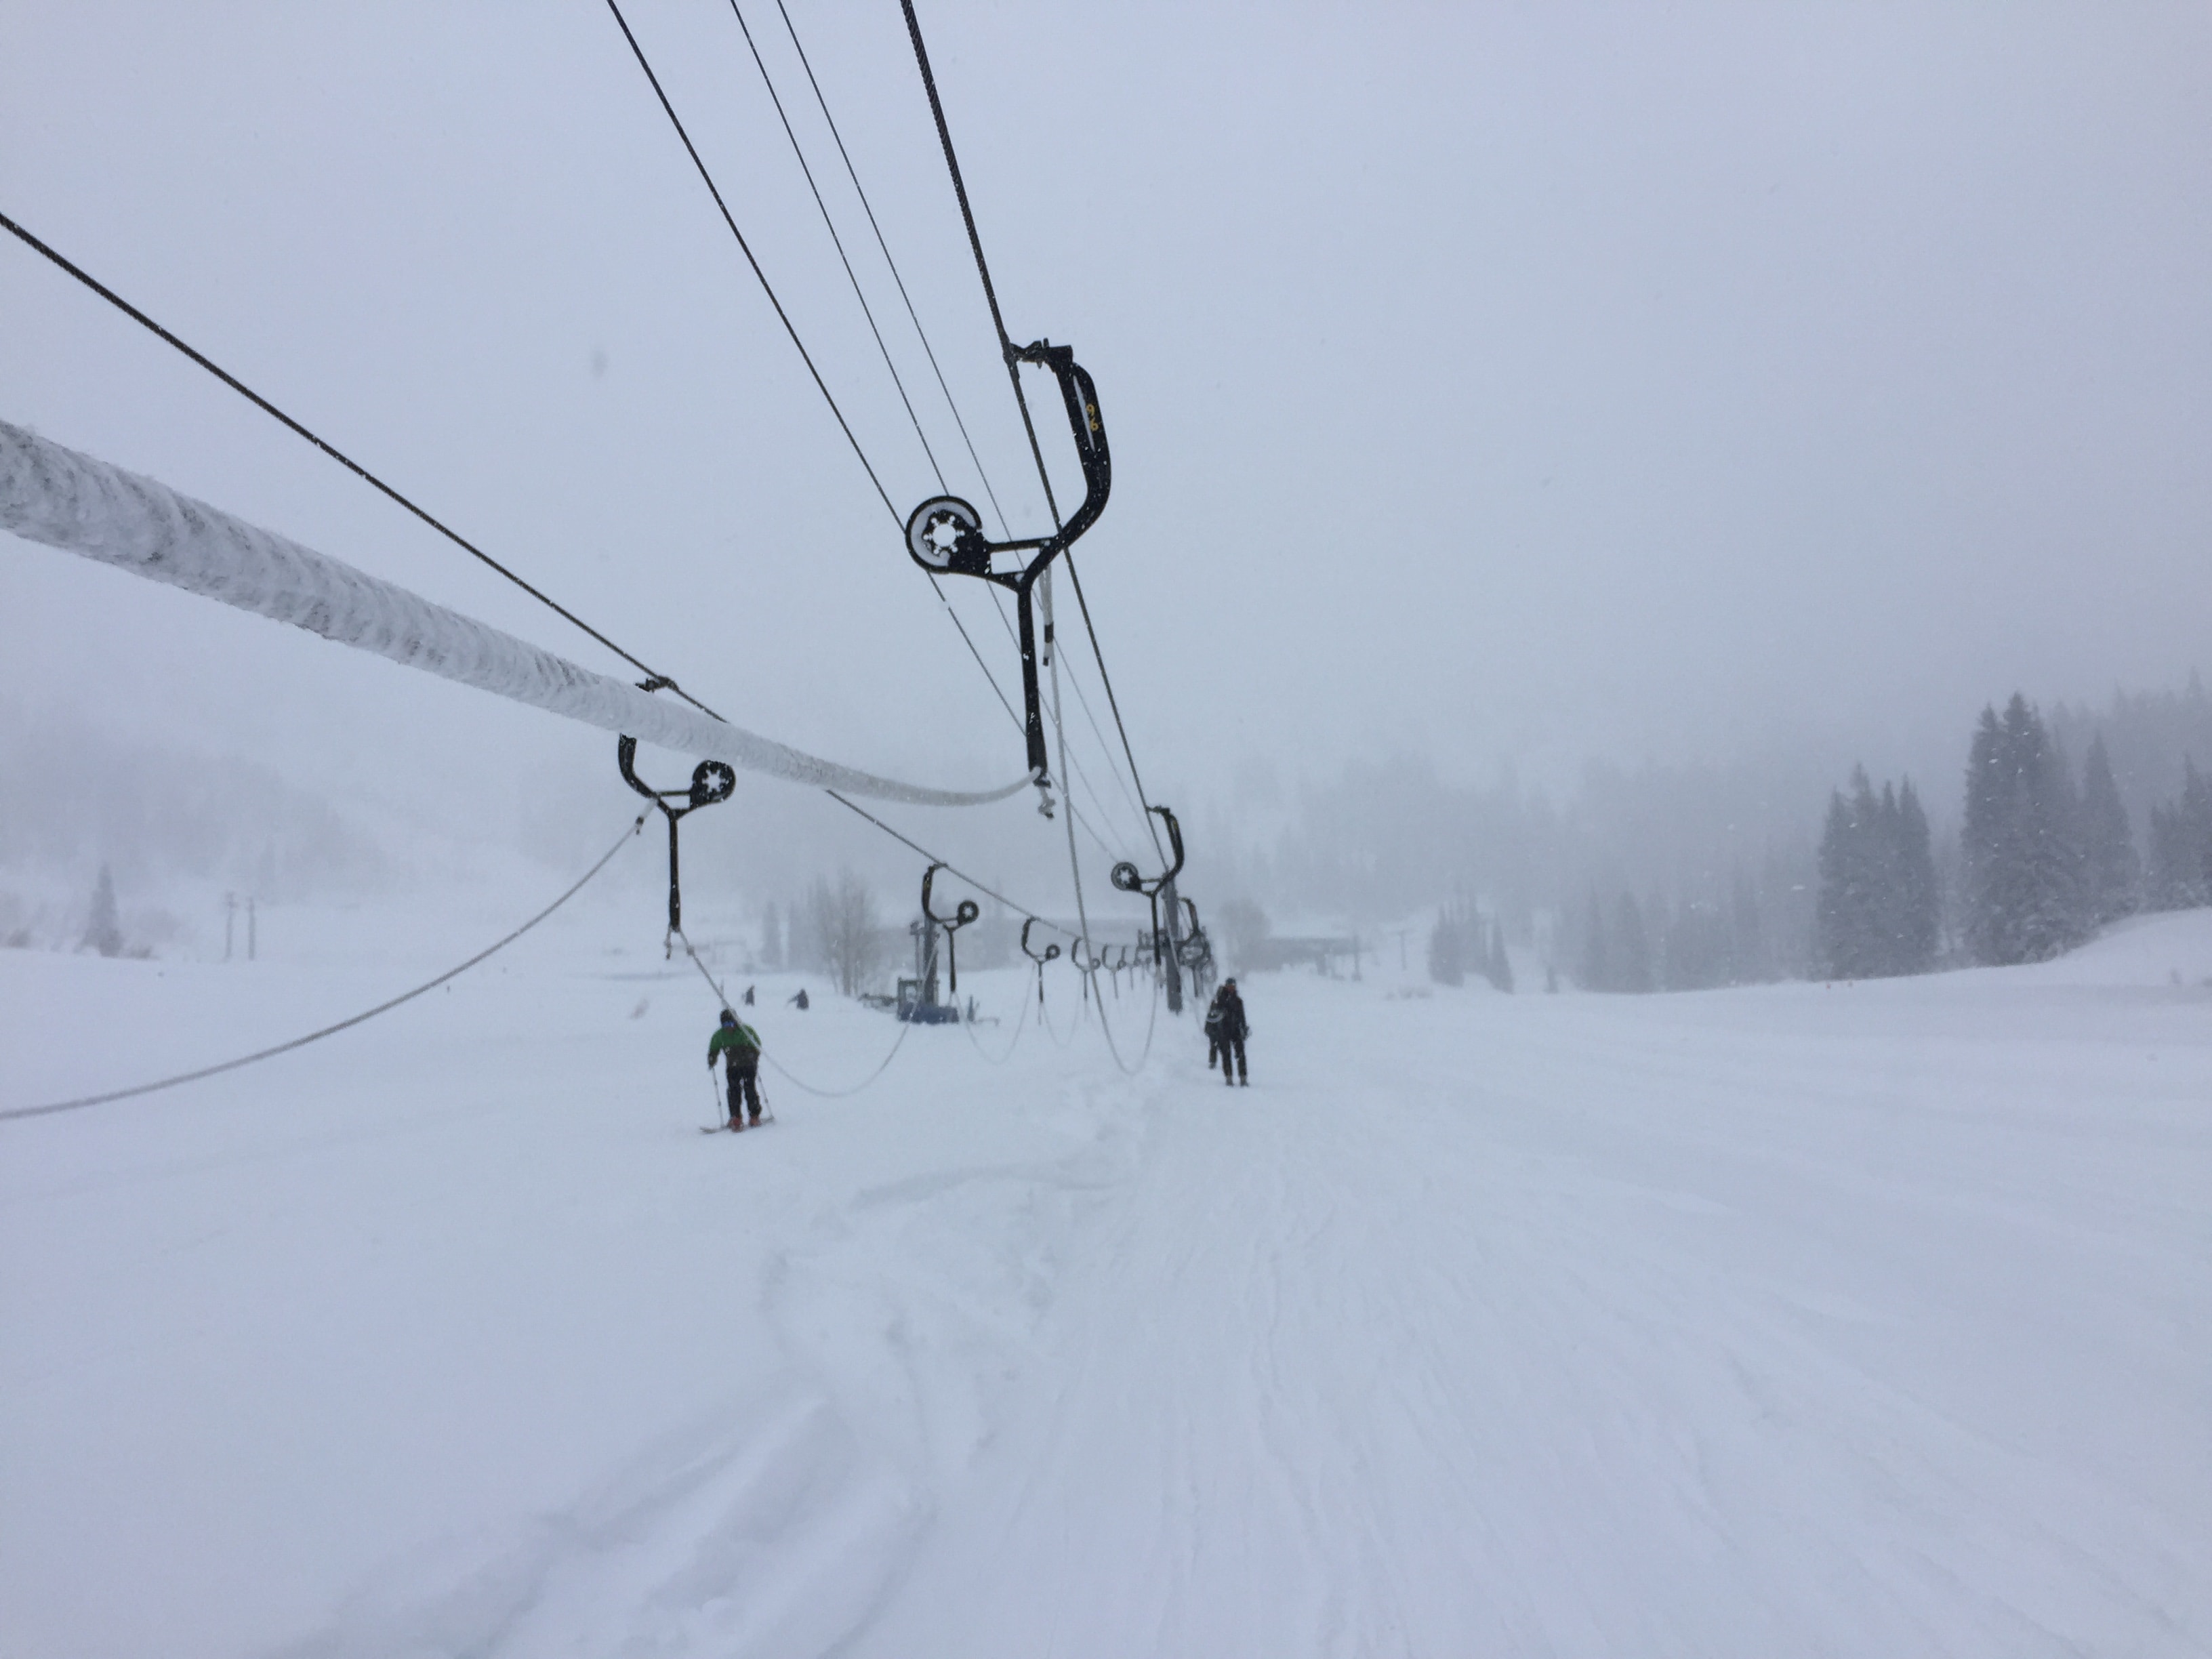 Alta Ski Area January 2017